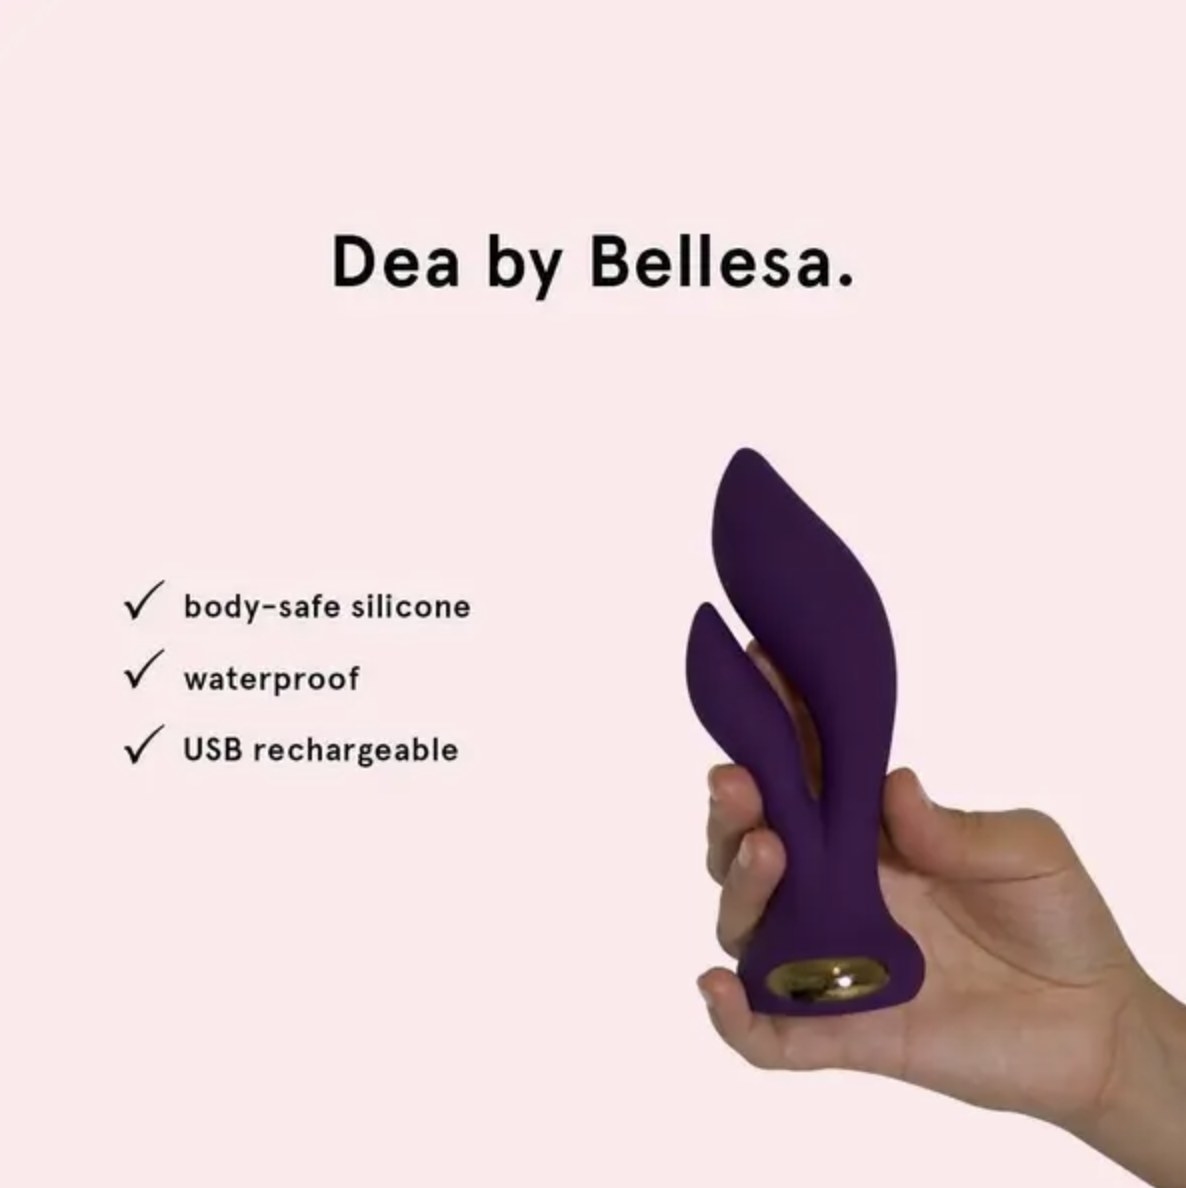 The purple rabbit vibrator